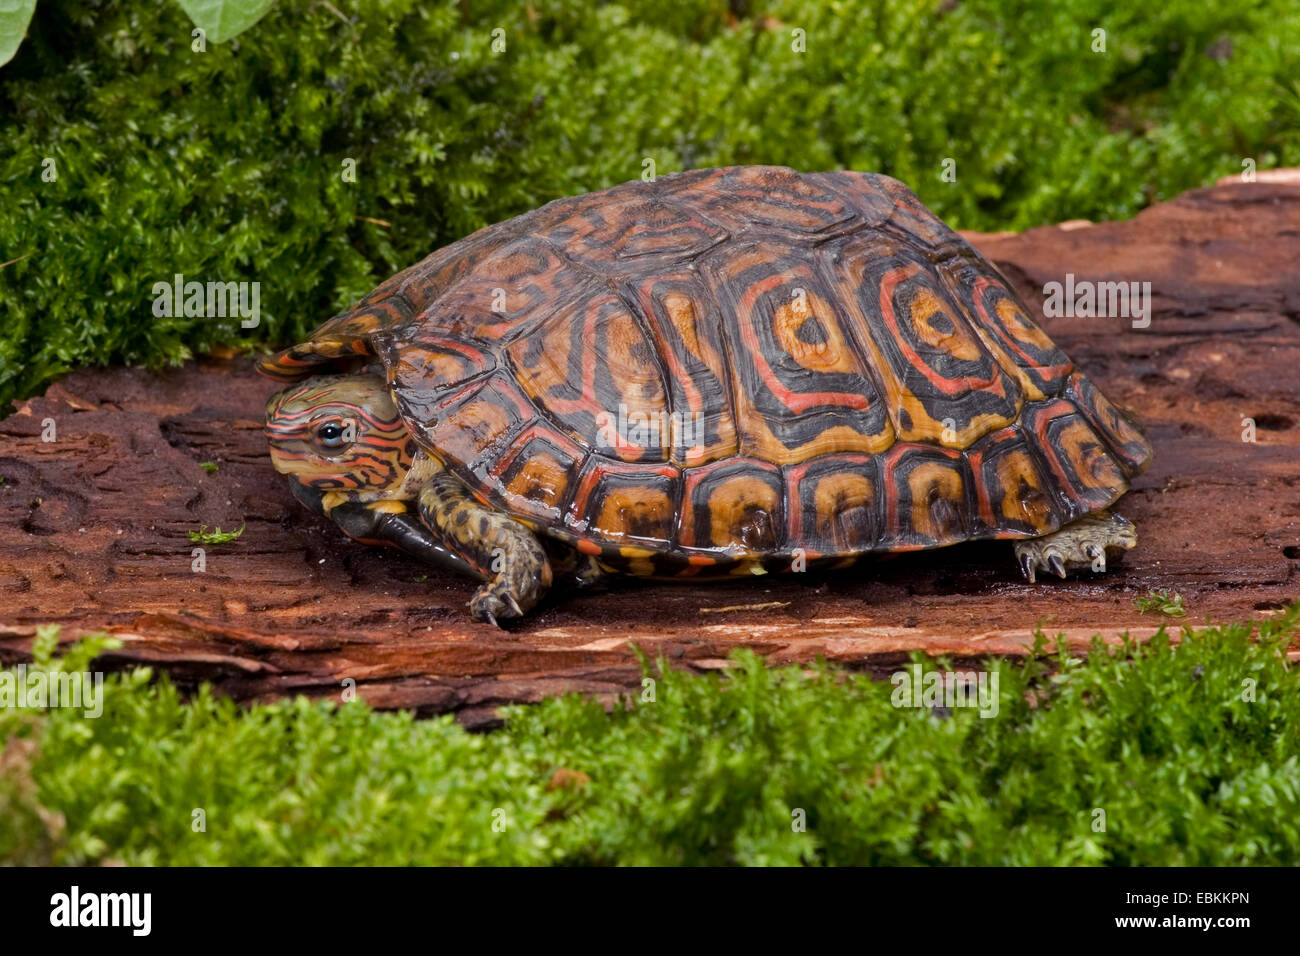 Tortue des bois peints, des tortue des bois (Rhinoclemmys pulcherrima), sur une pierre Banque D'Images